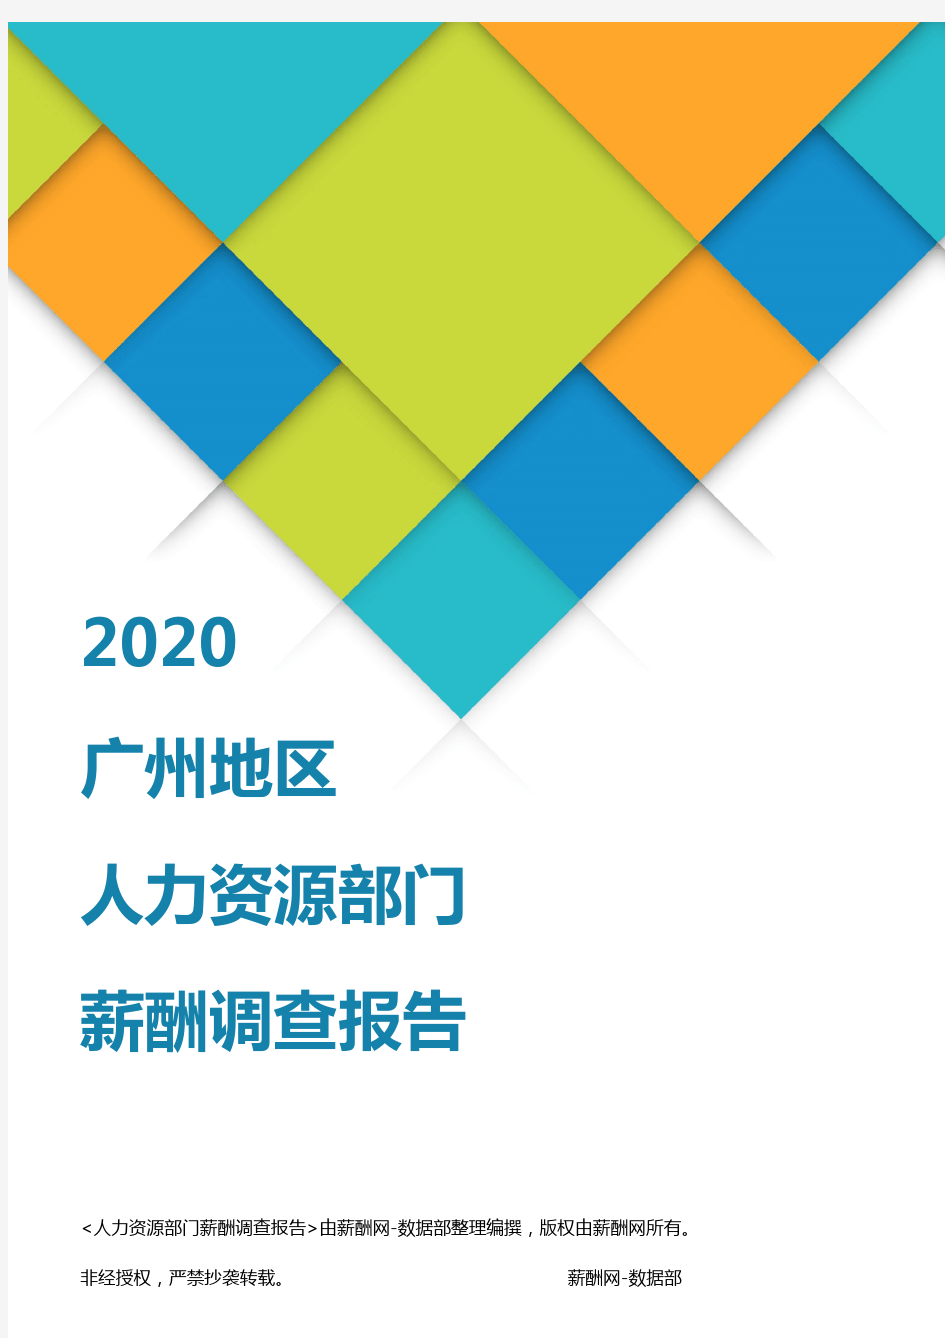 薪酬报告系列-2020广州地区人力资源部门薪酬调查报告